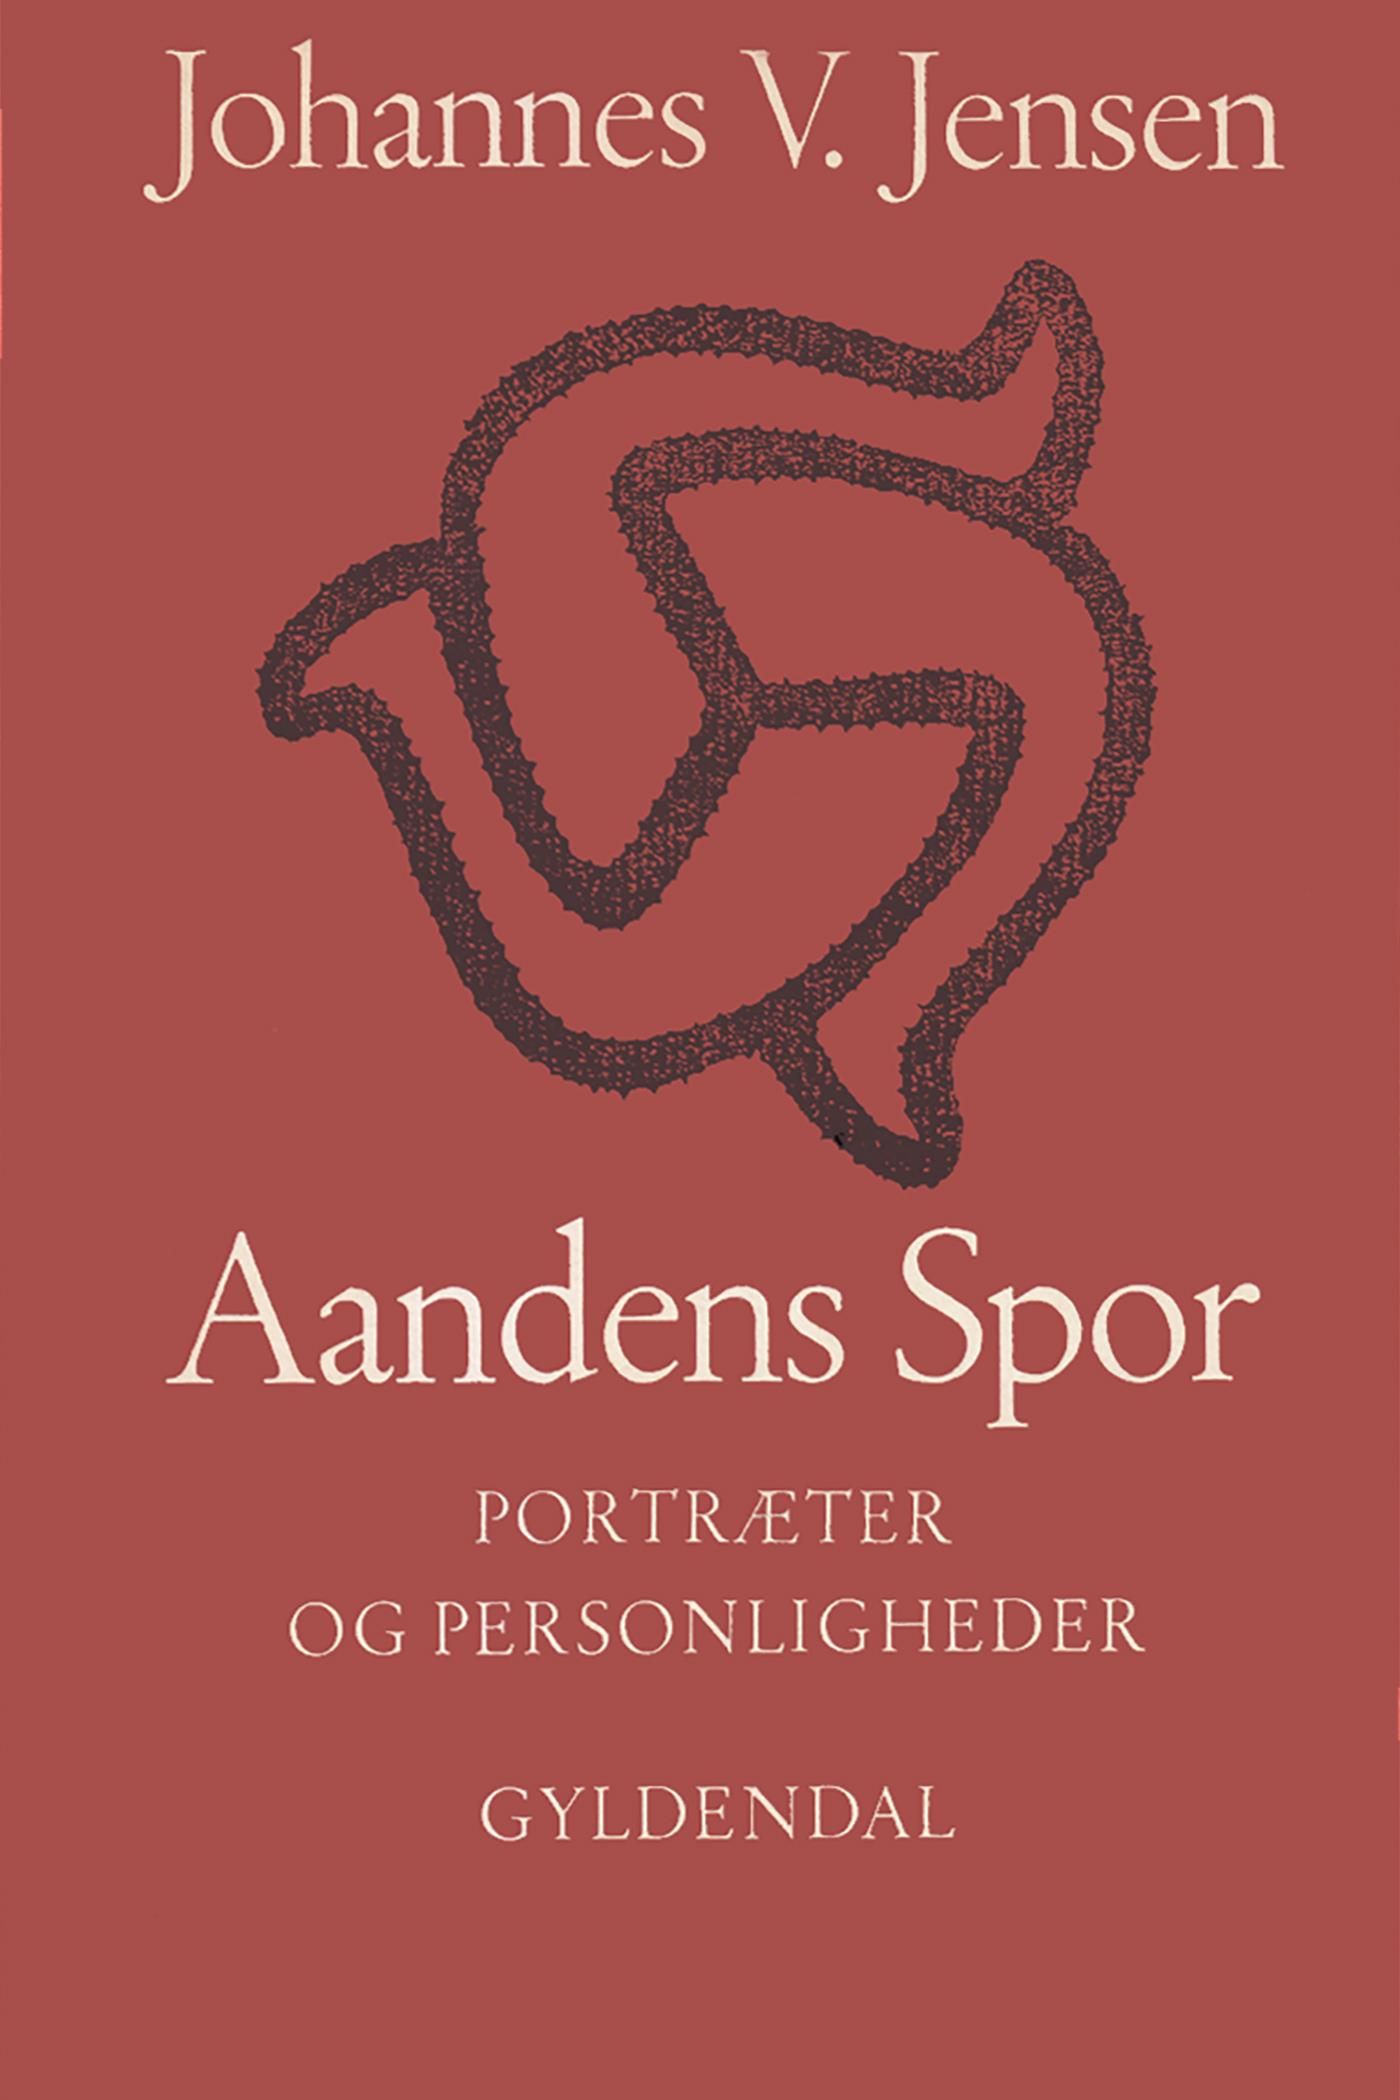 Aandens Spor, e-bog af Johannes V. Jensen